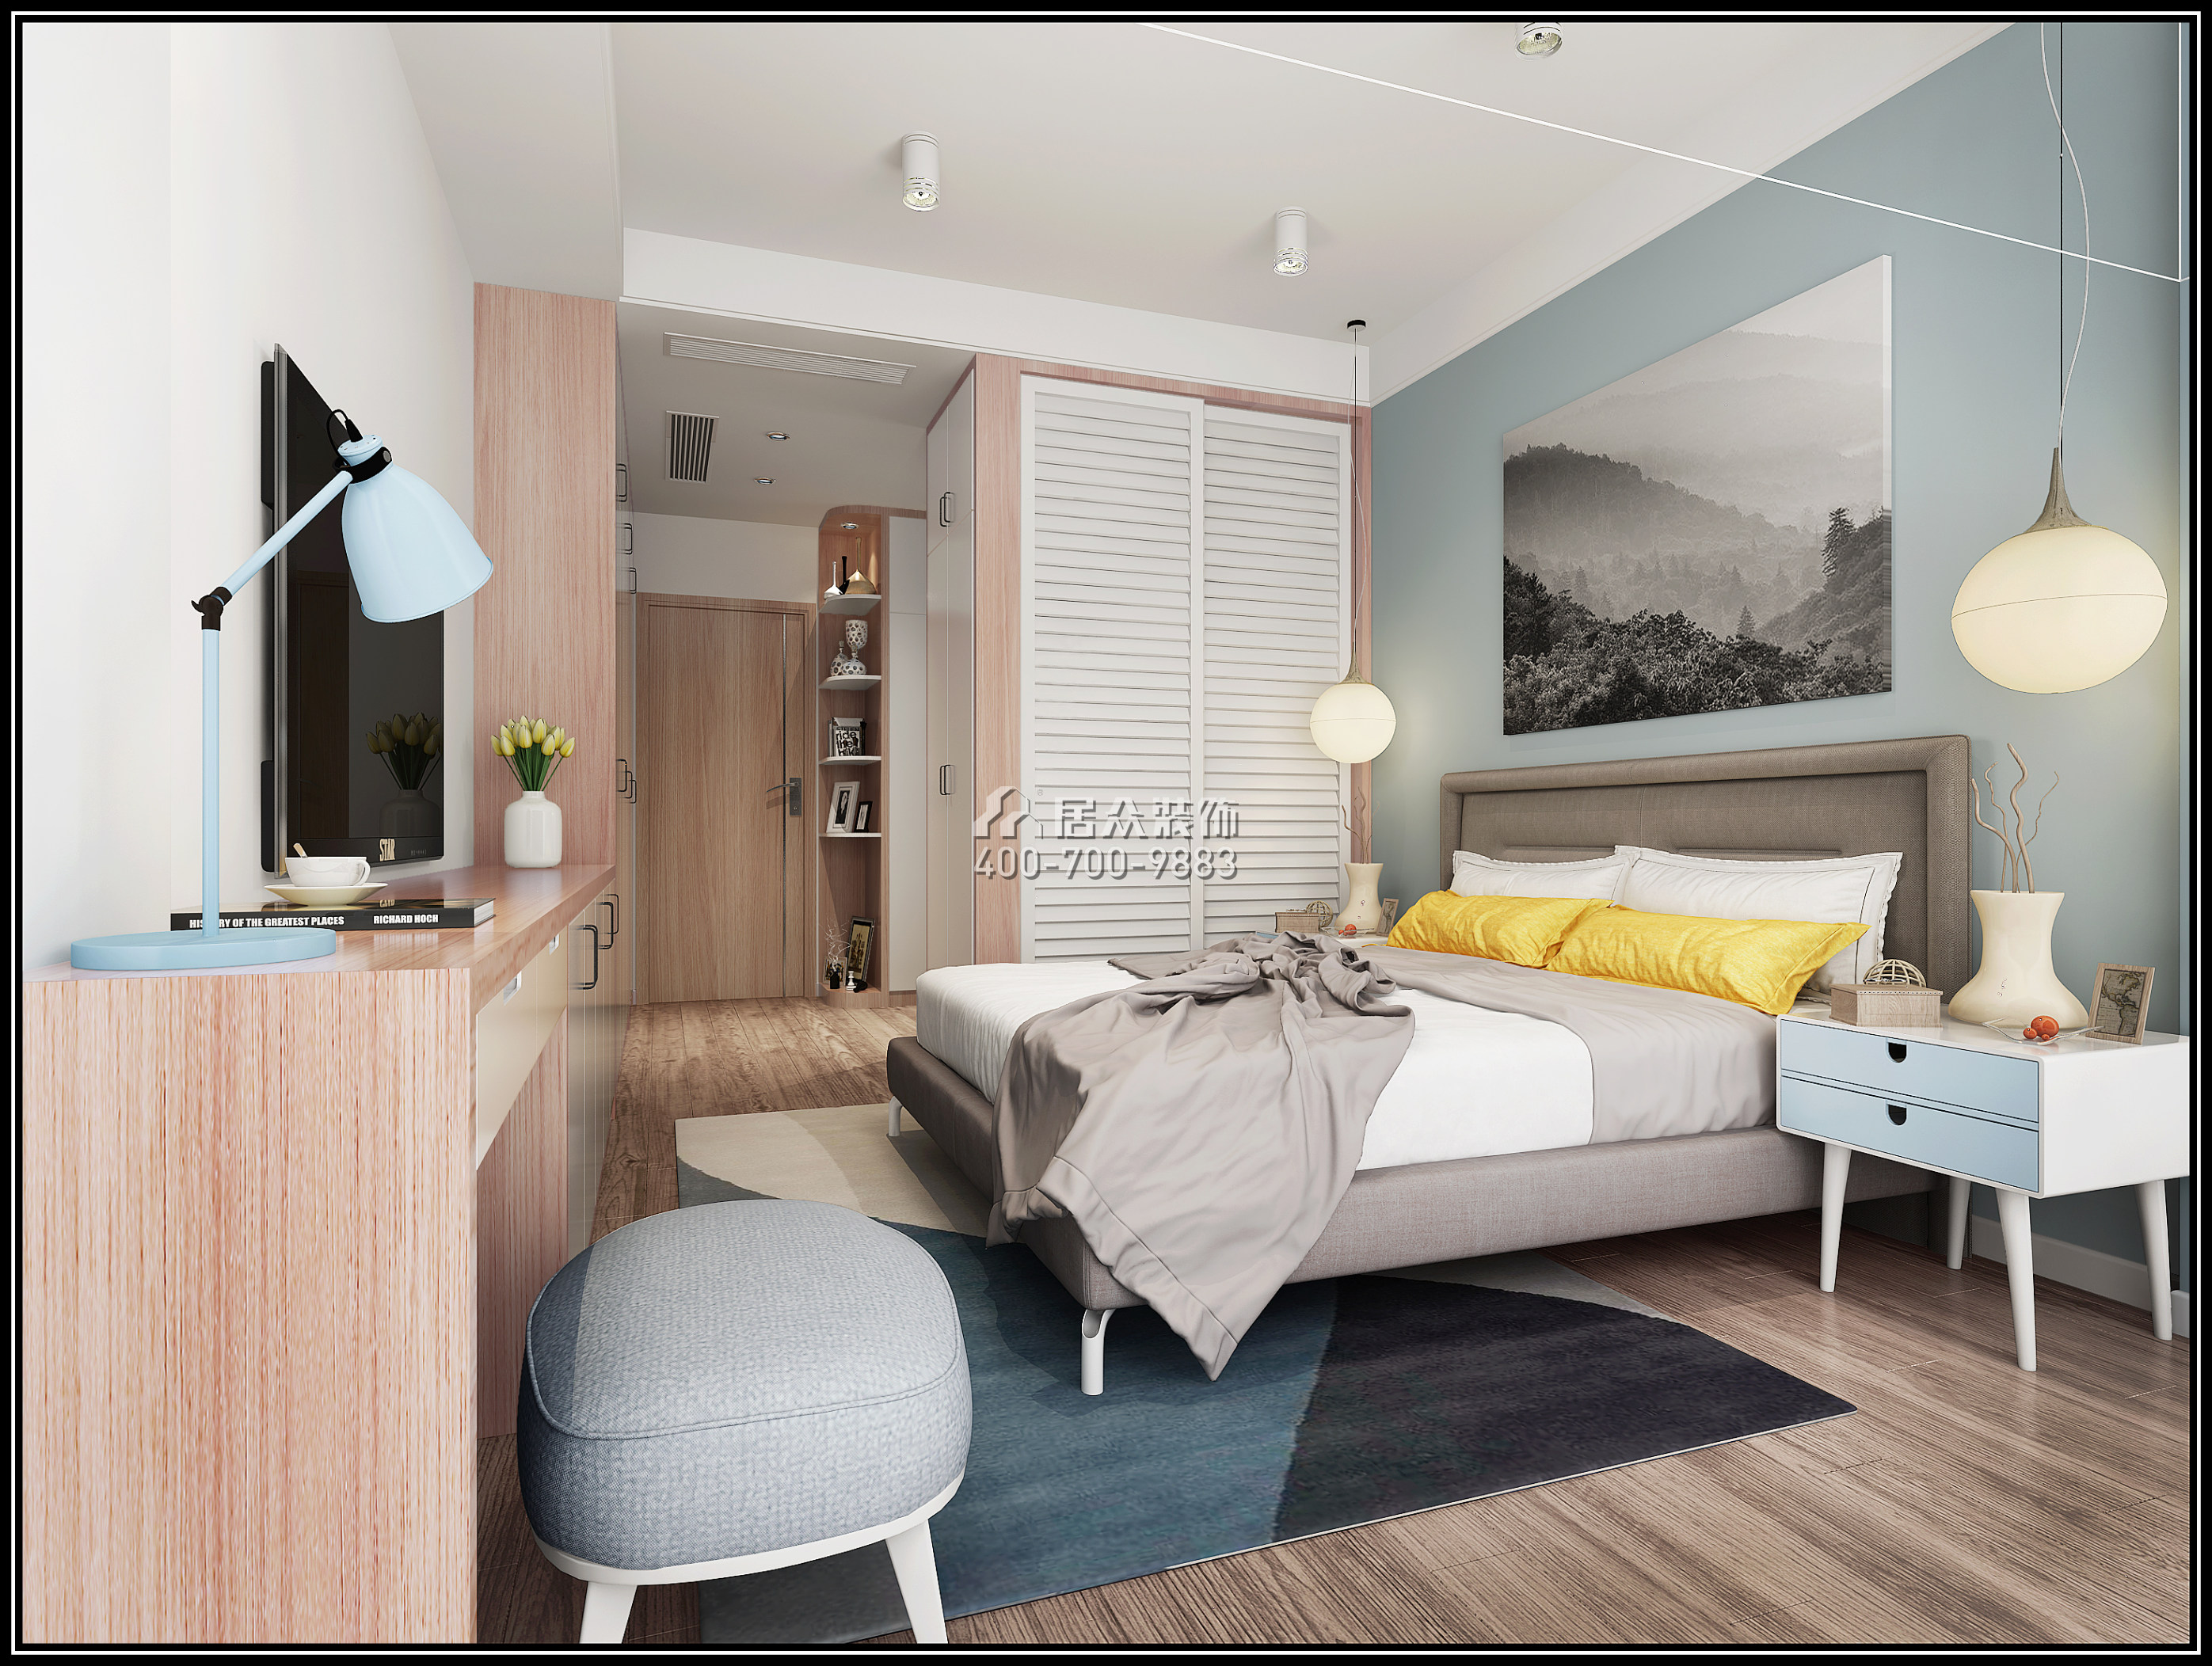 鼎太风华90平方米北欧风格平层户型卧室装修效果图